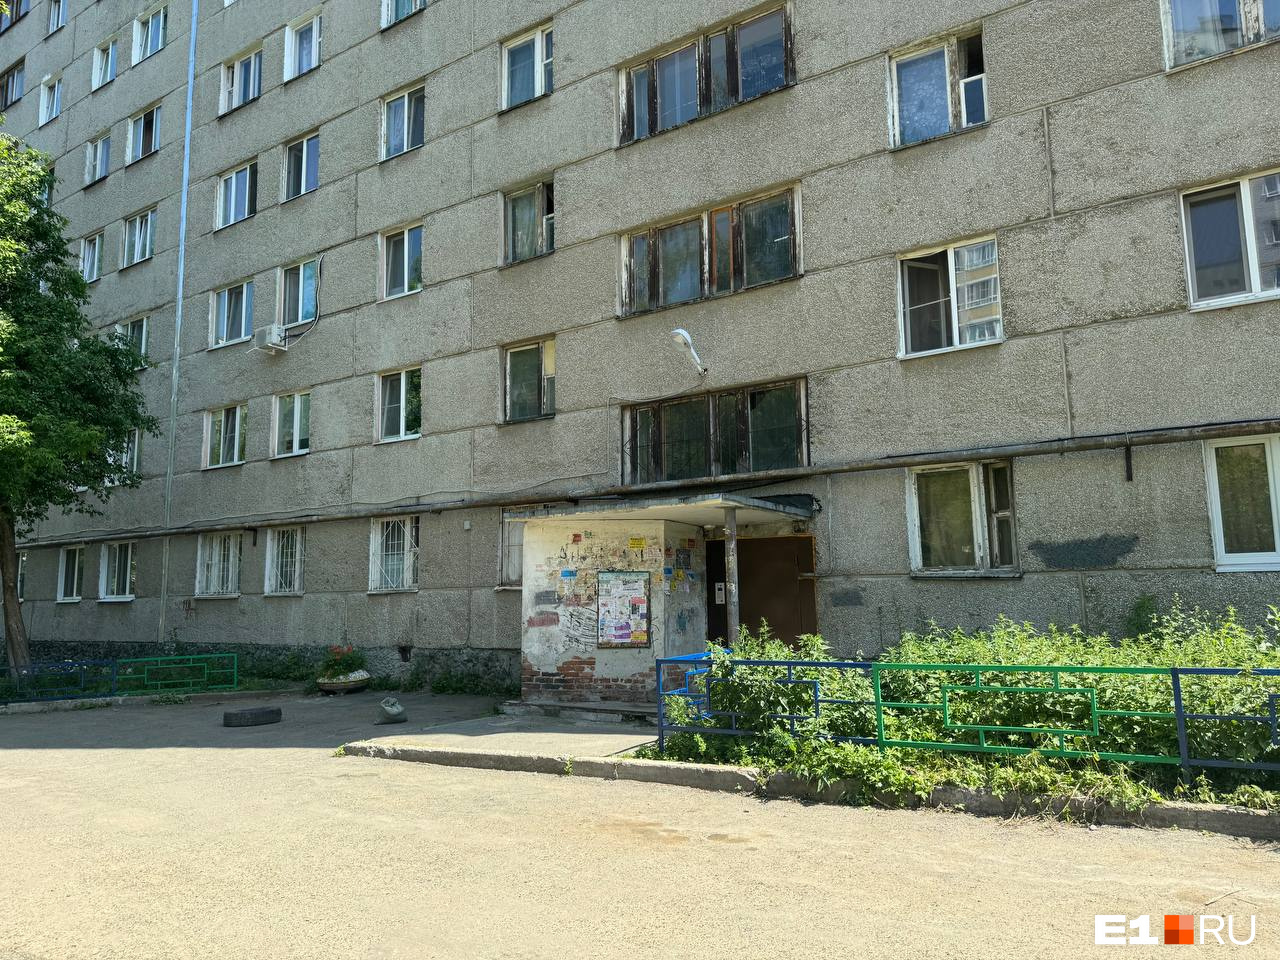 Школьница выпала ночью из окна на Сортировке. Что происходило в квартире?